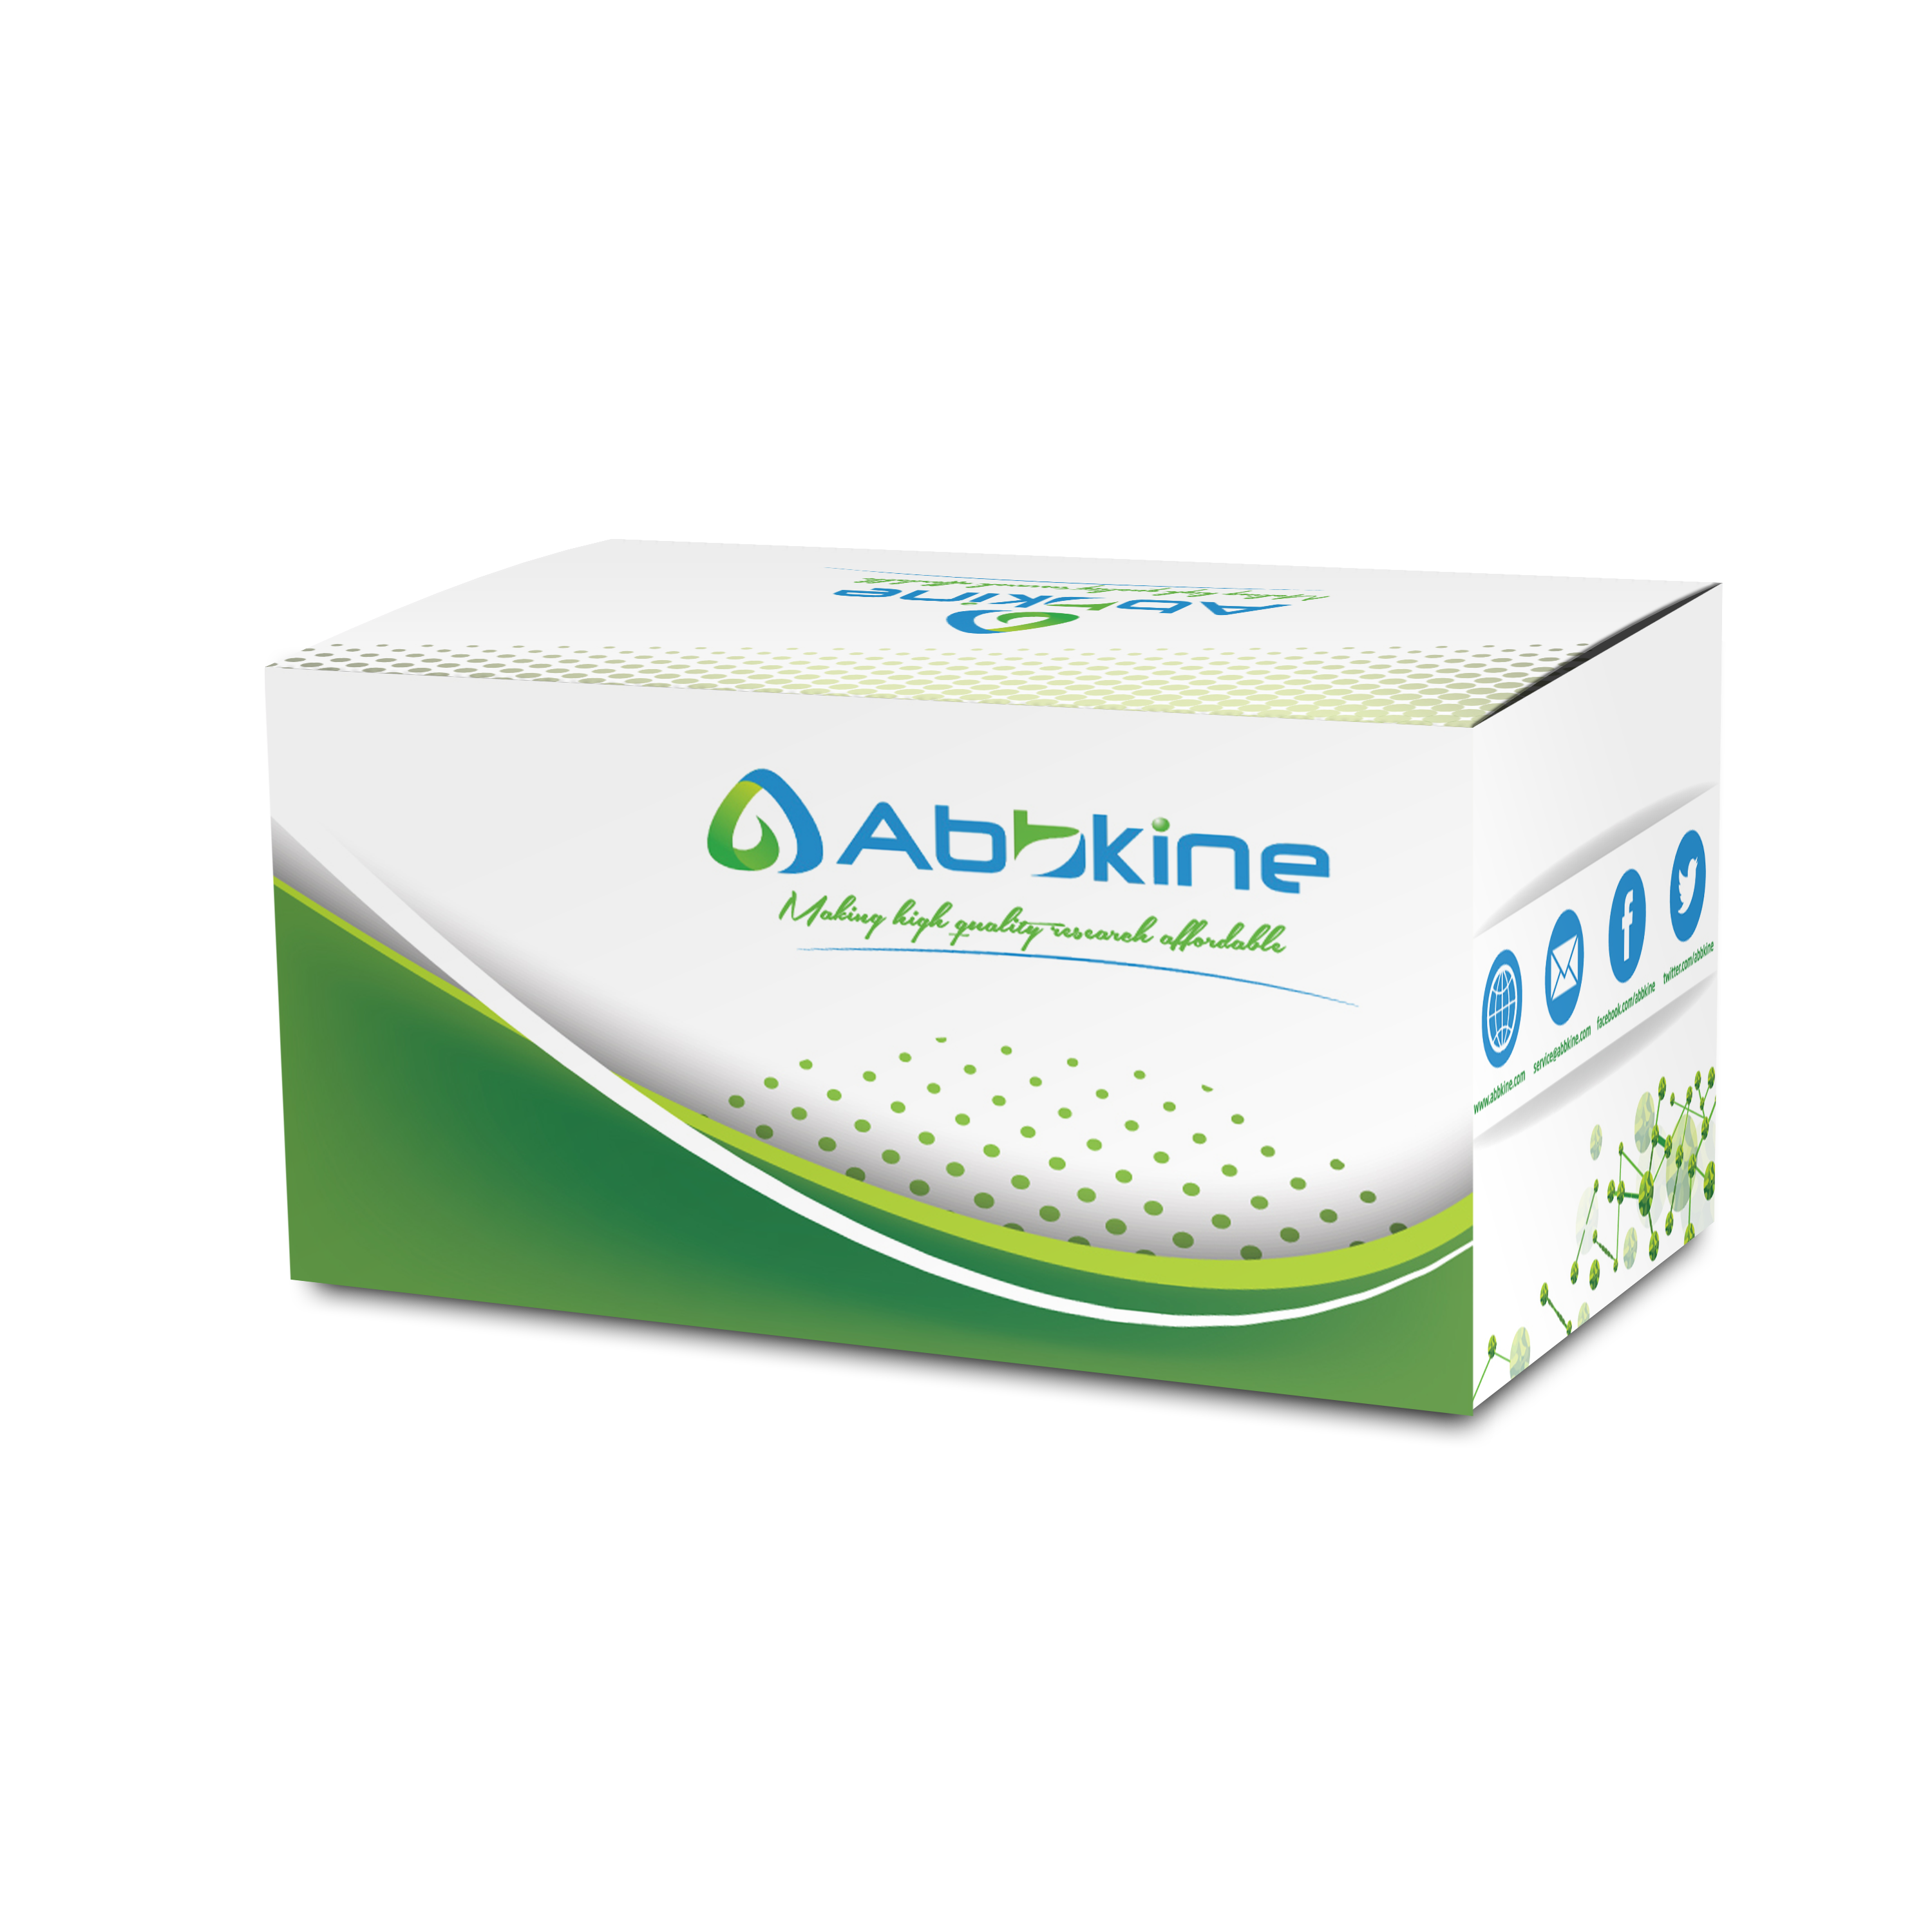 abbkine-kit.png&&Fig. CheKine Total Cholesterol (TC) Colorimetric Assay Kit